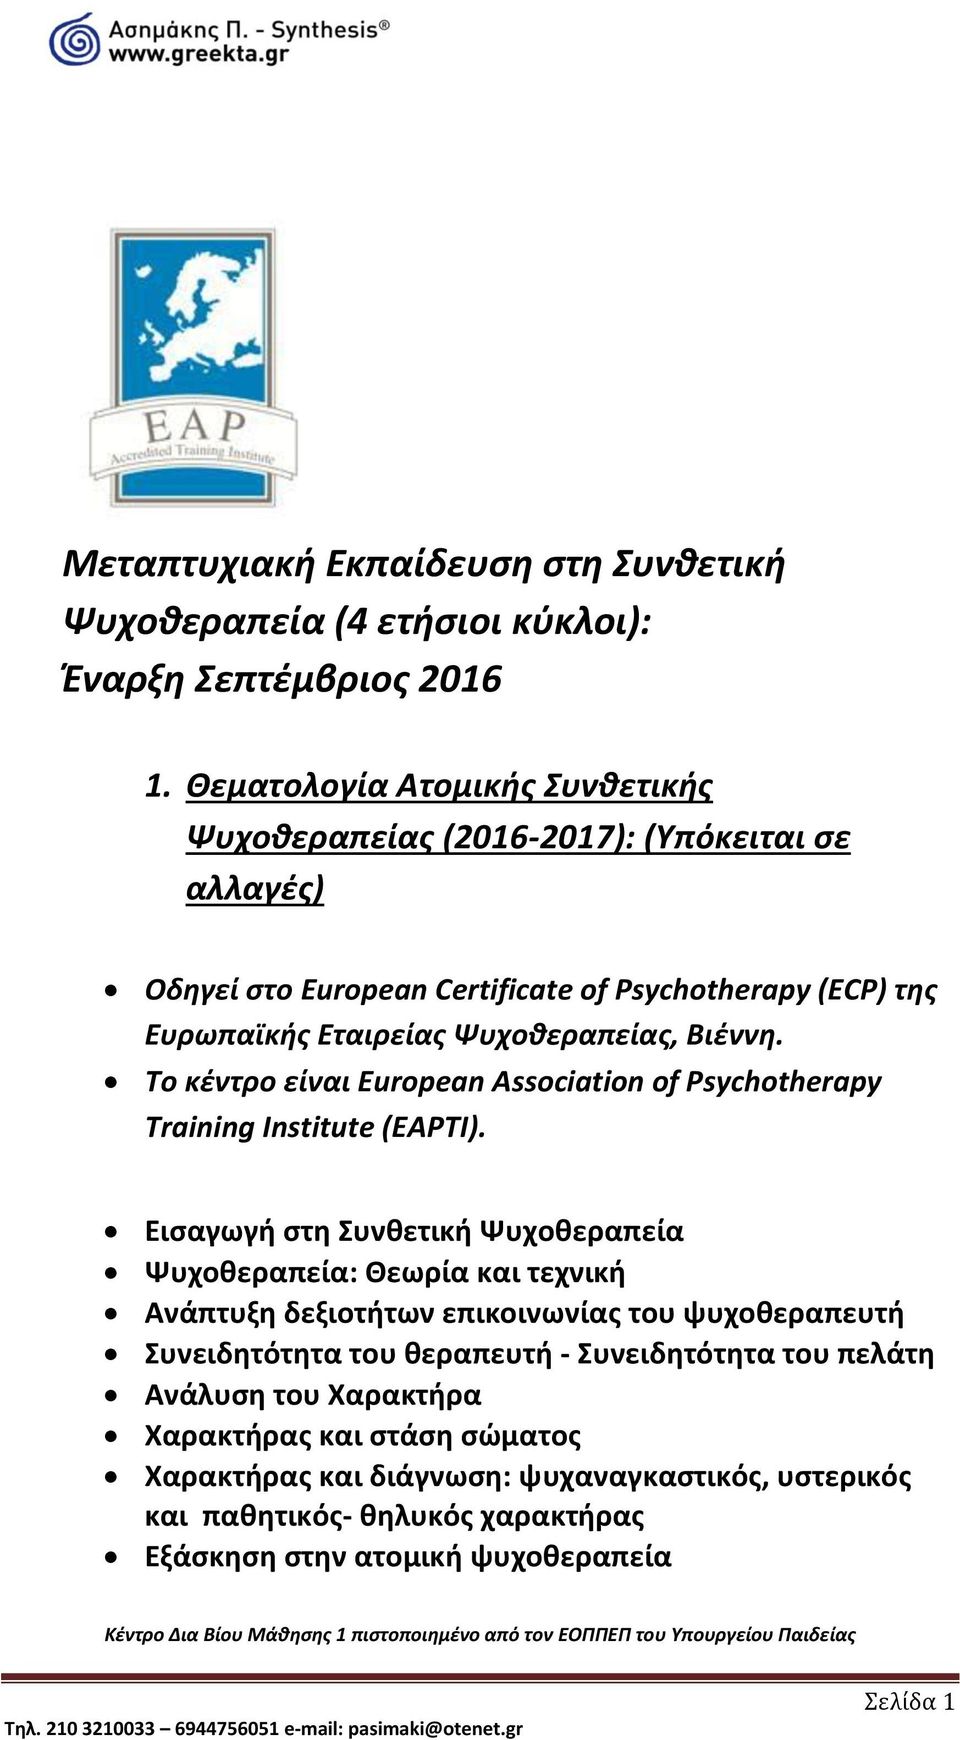 Βιέννη. Το κέντρο είναι European Association of Psychotherapy Training Institute (EAPTI).